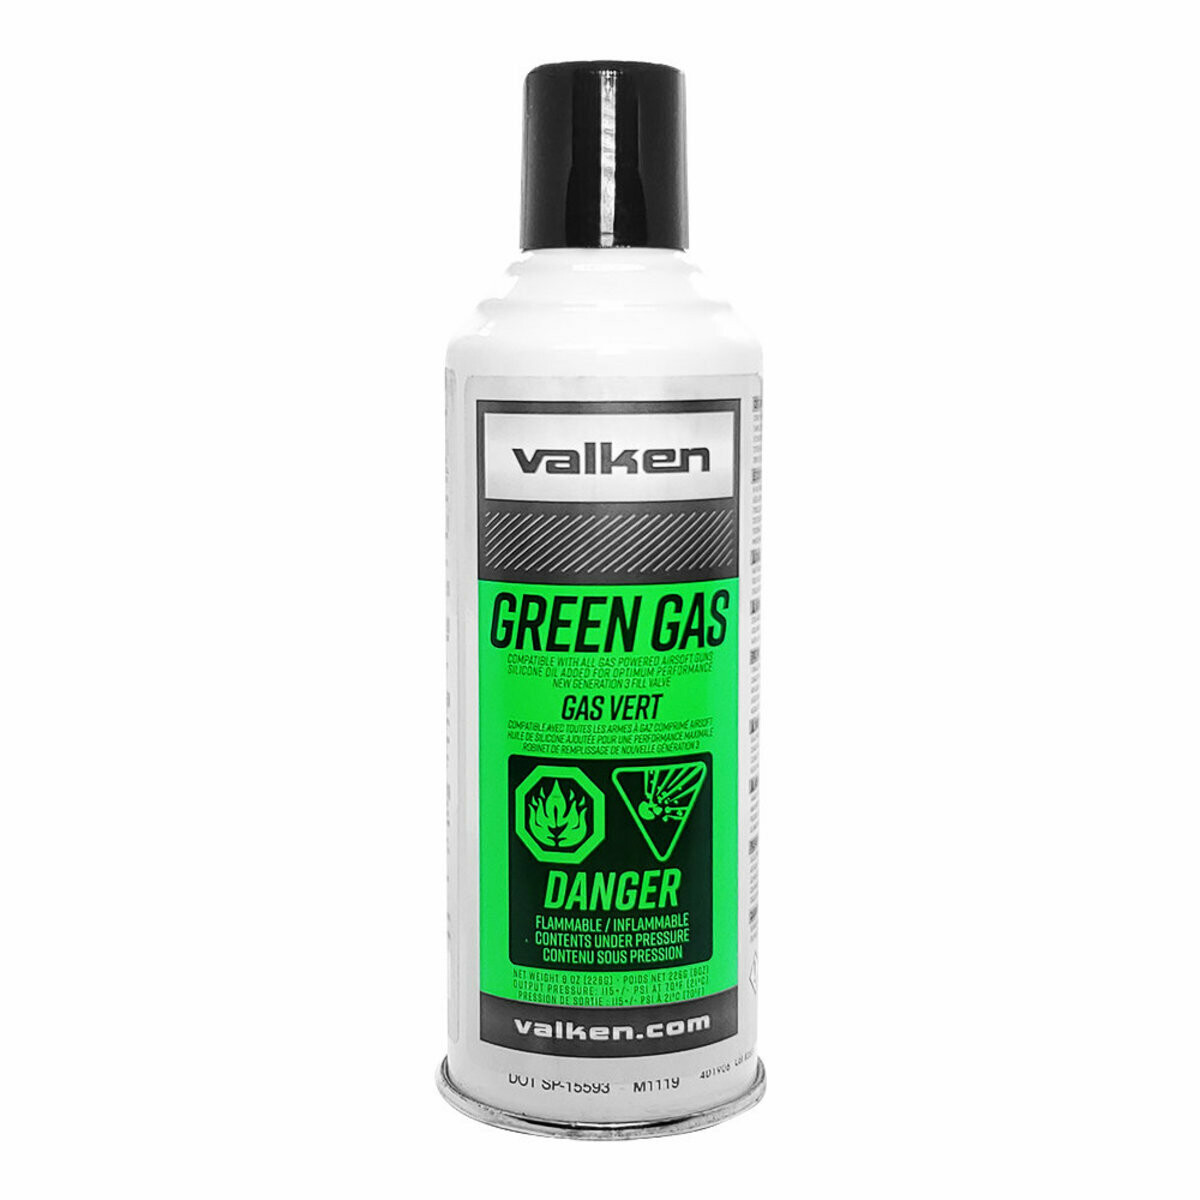 Green Gas by Valken